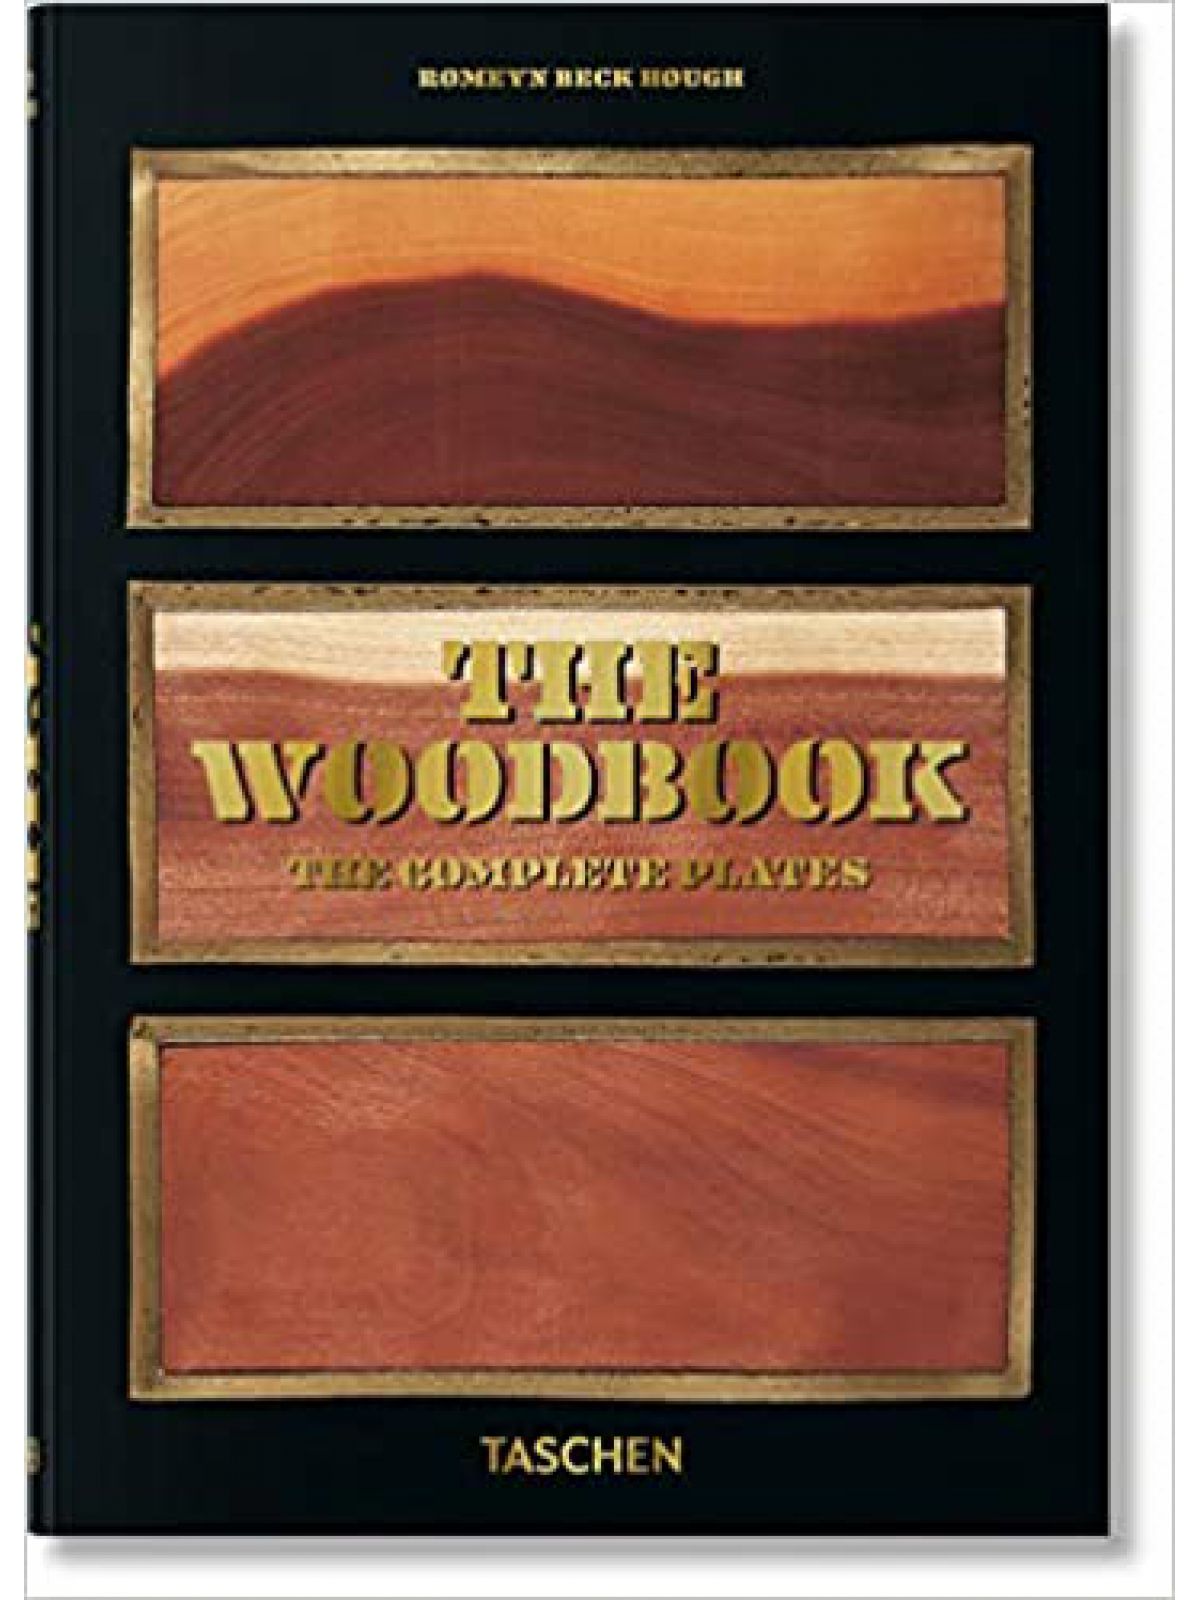 WOOD BOOK/HOUGH GOLD EDITION  Купить Книгу на Английском